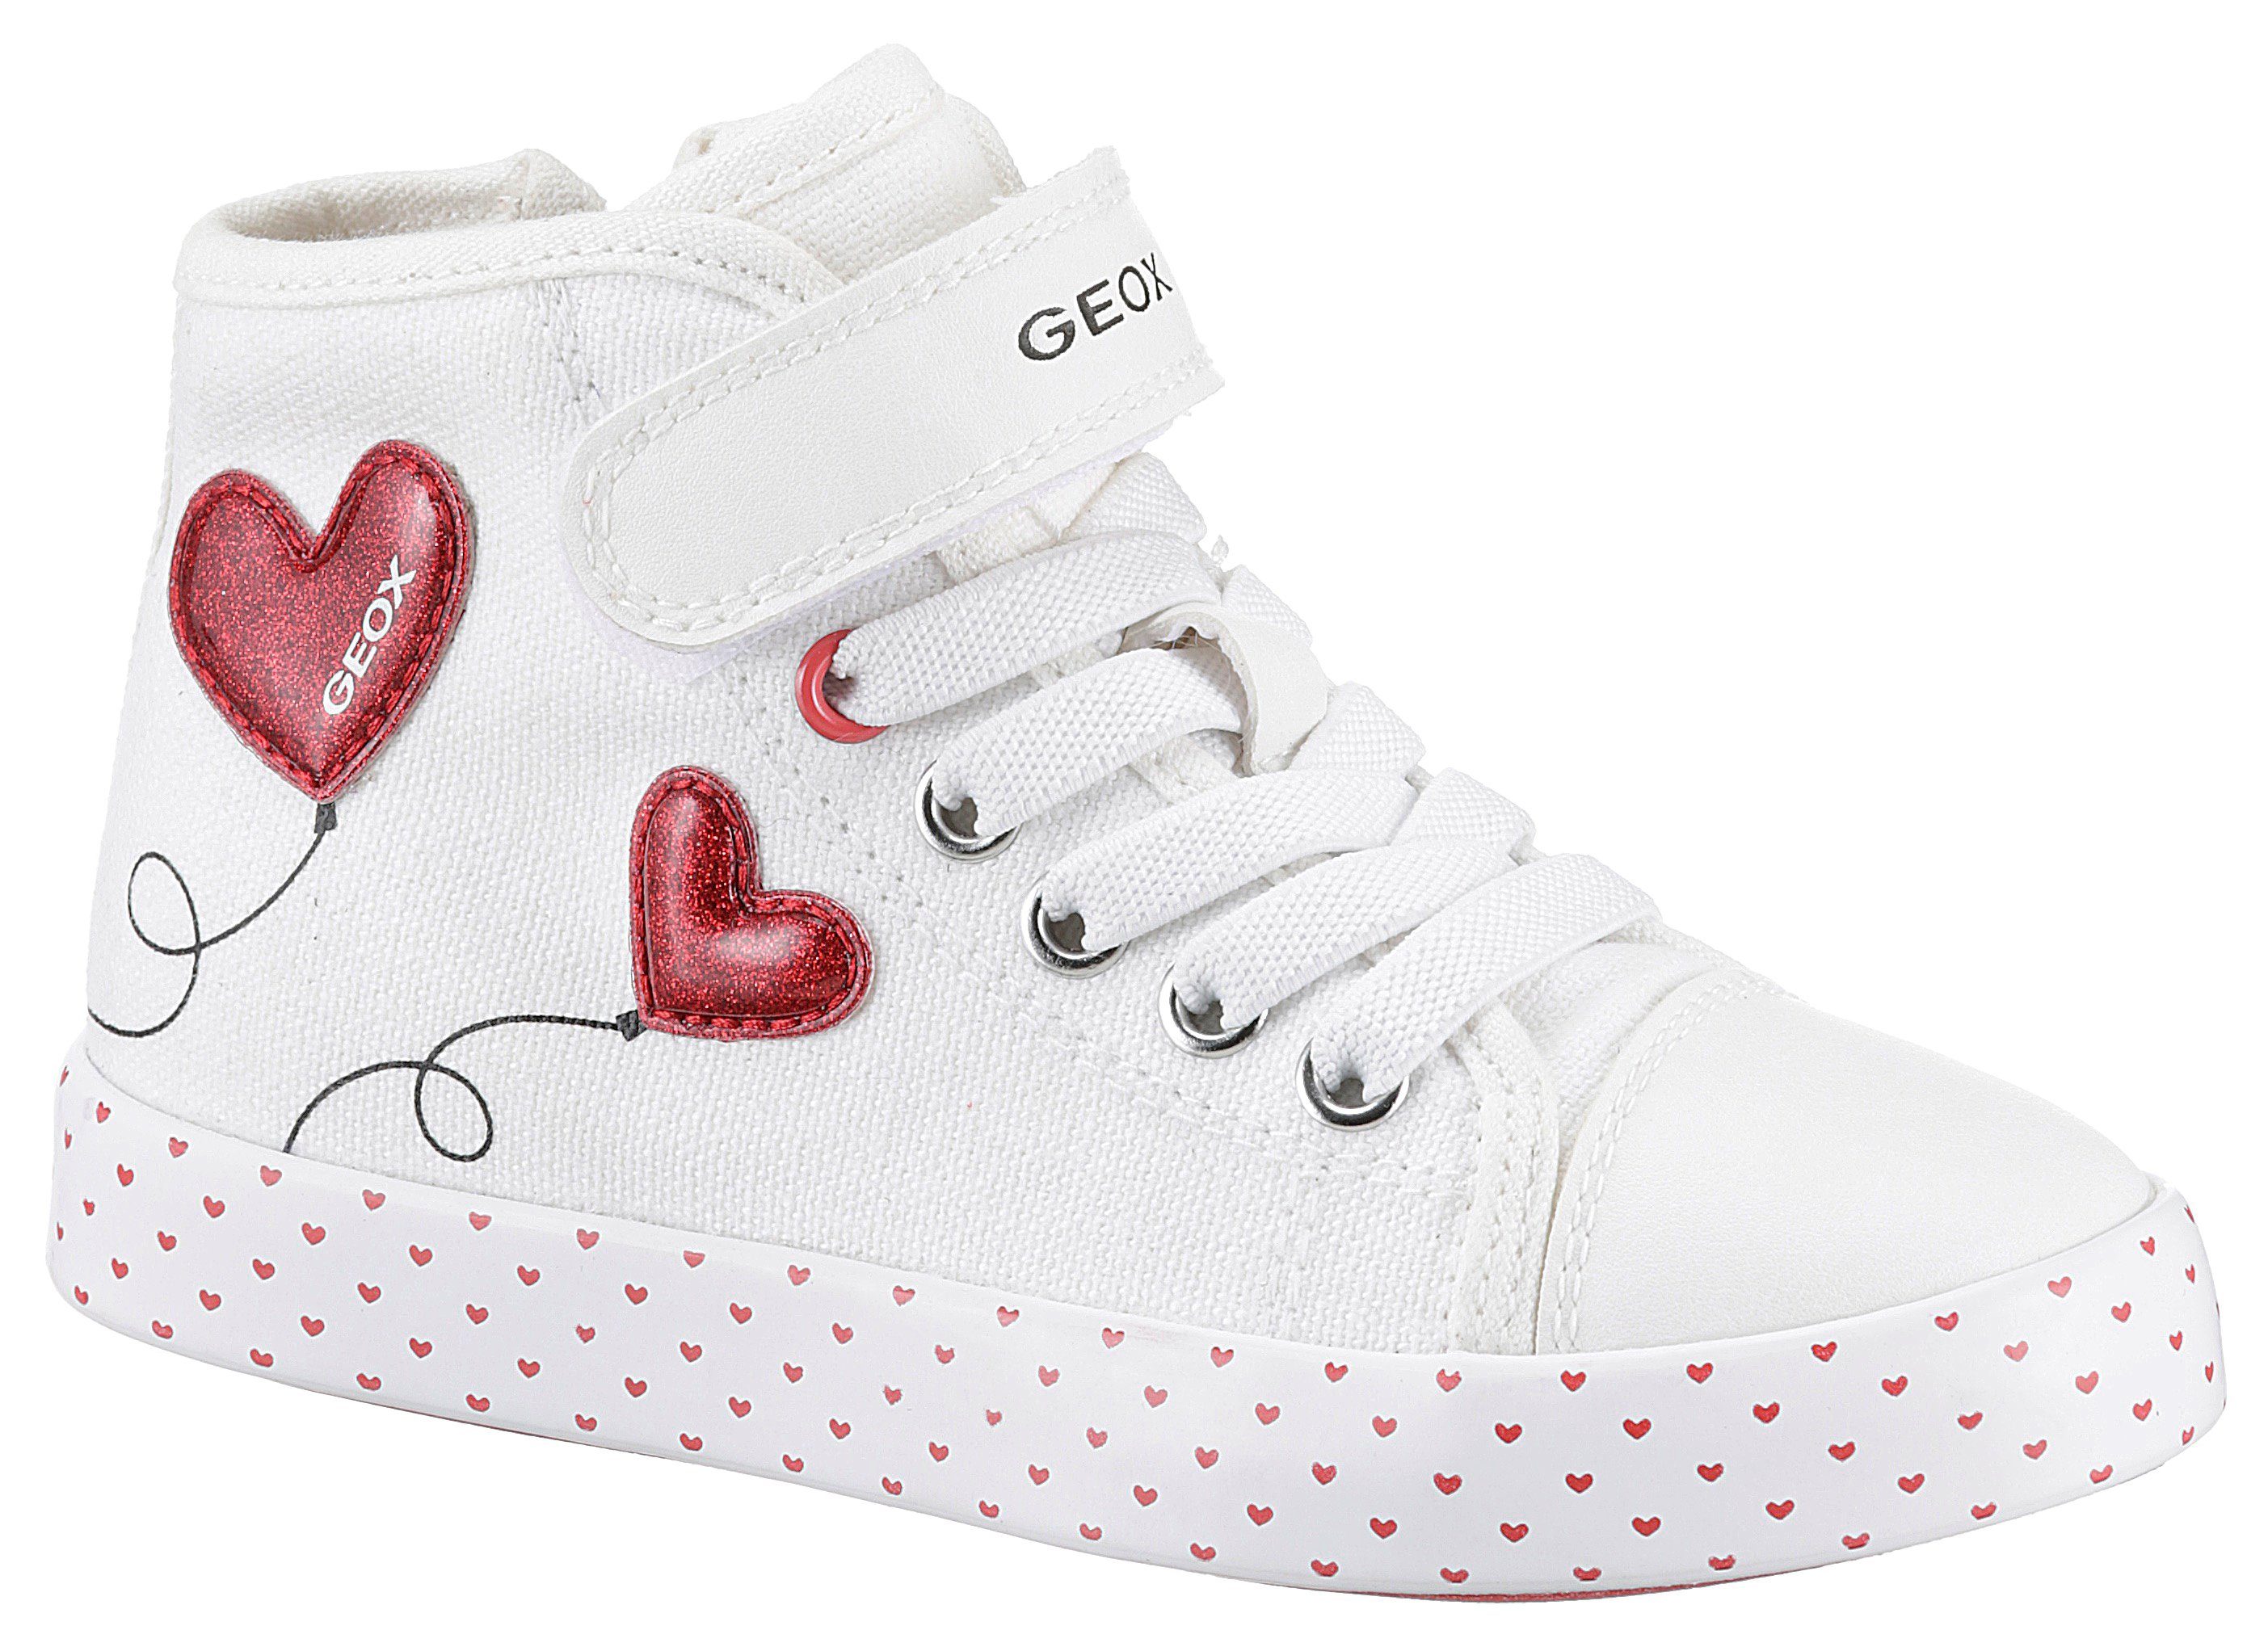 Geox JR CIAK GIRL Sneaker mit süßen Herzchenmotiv